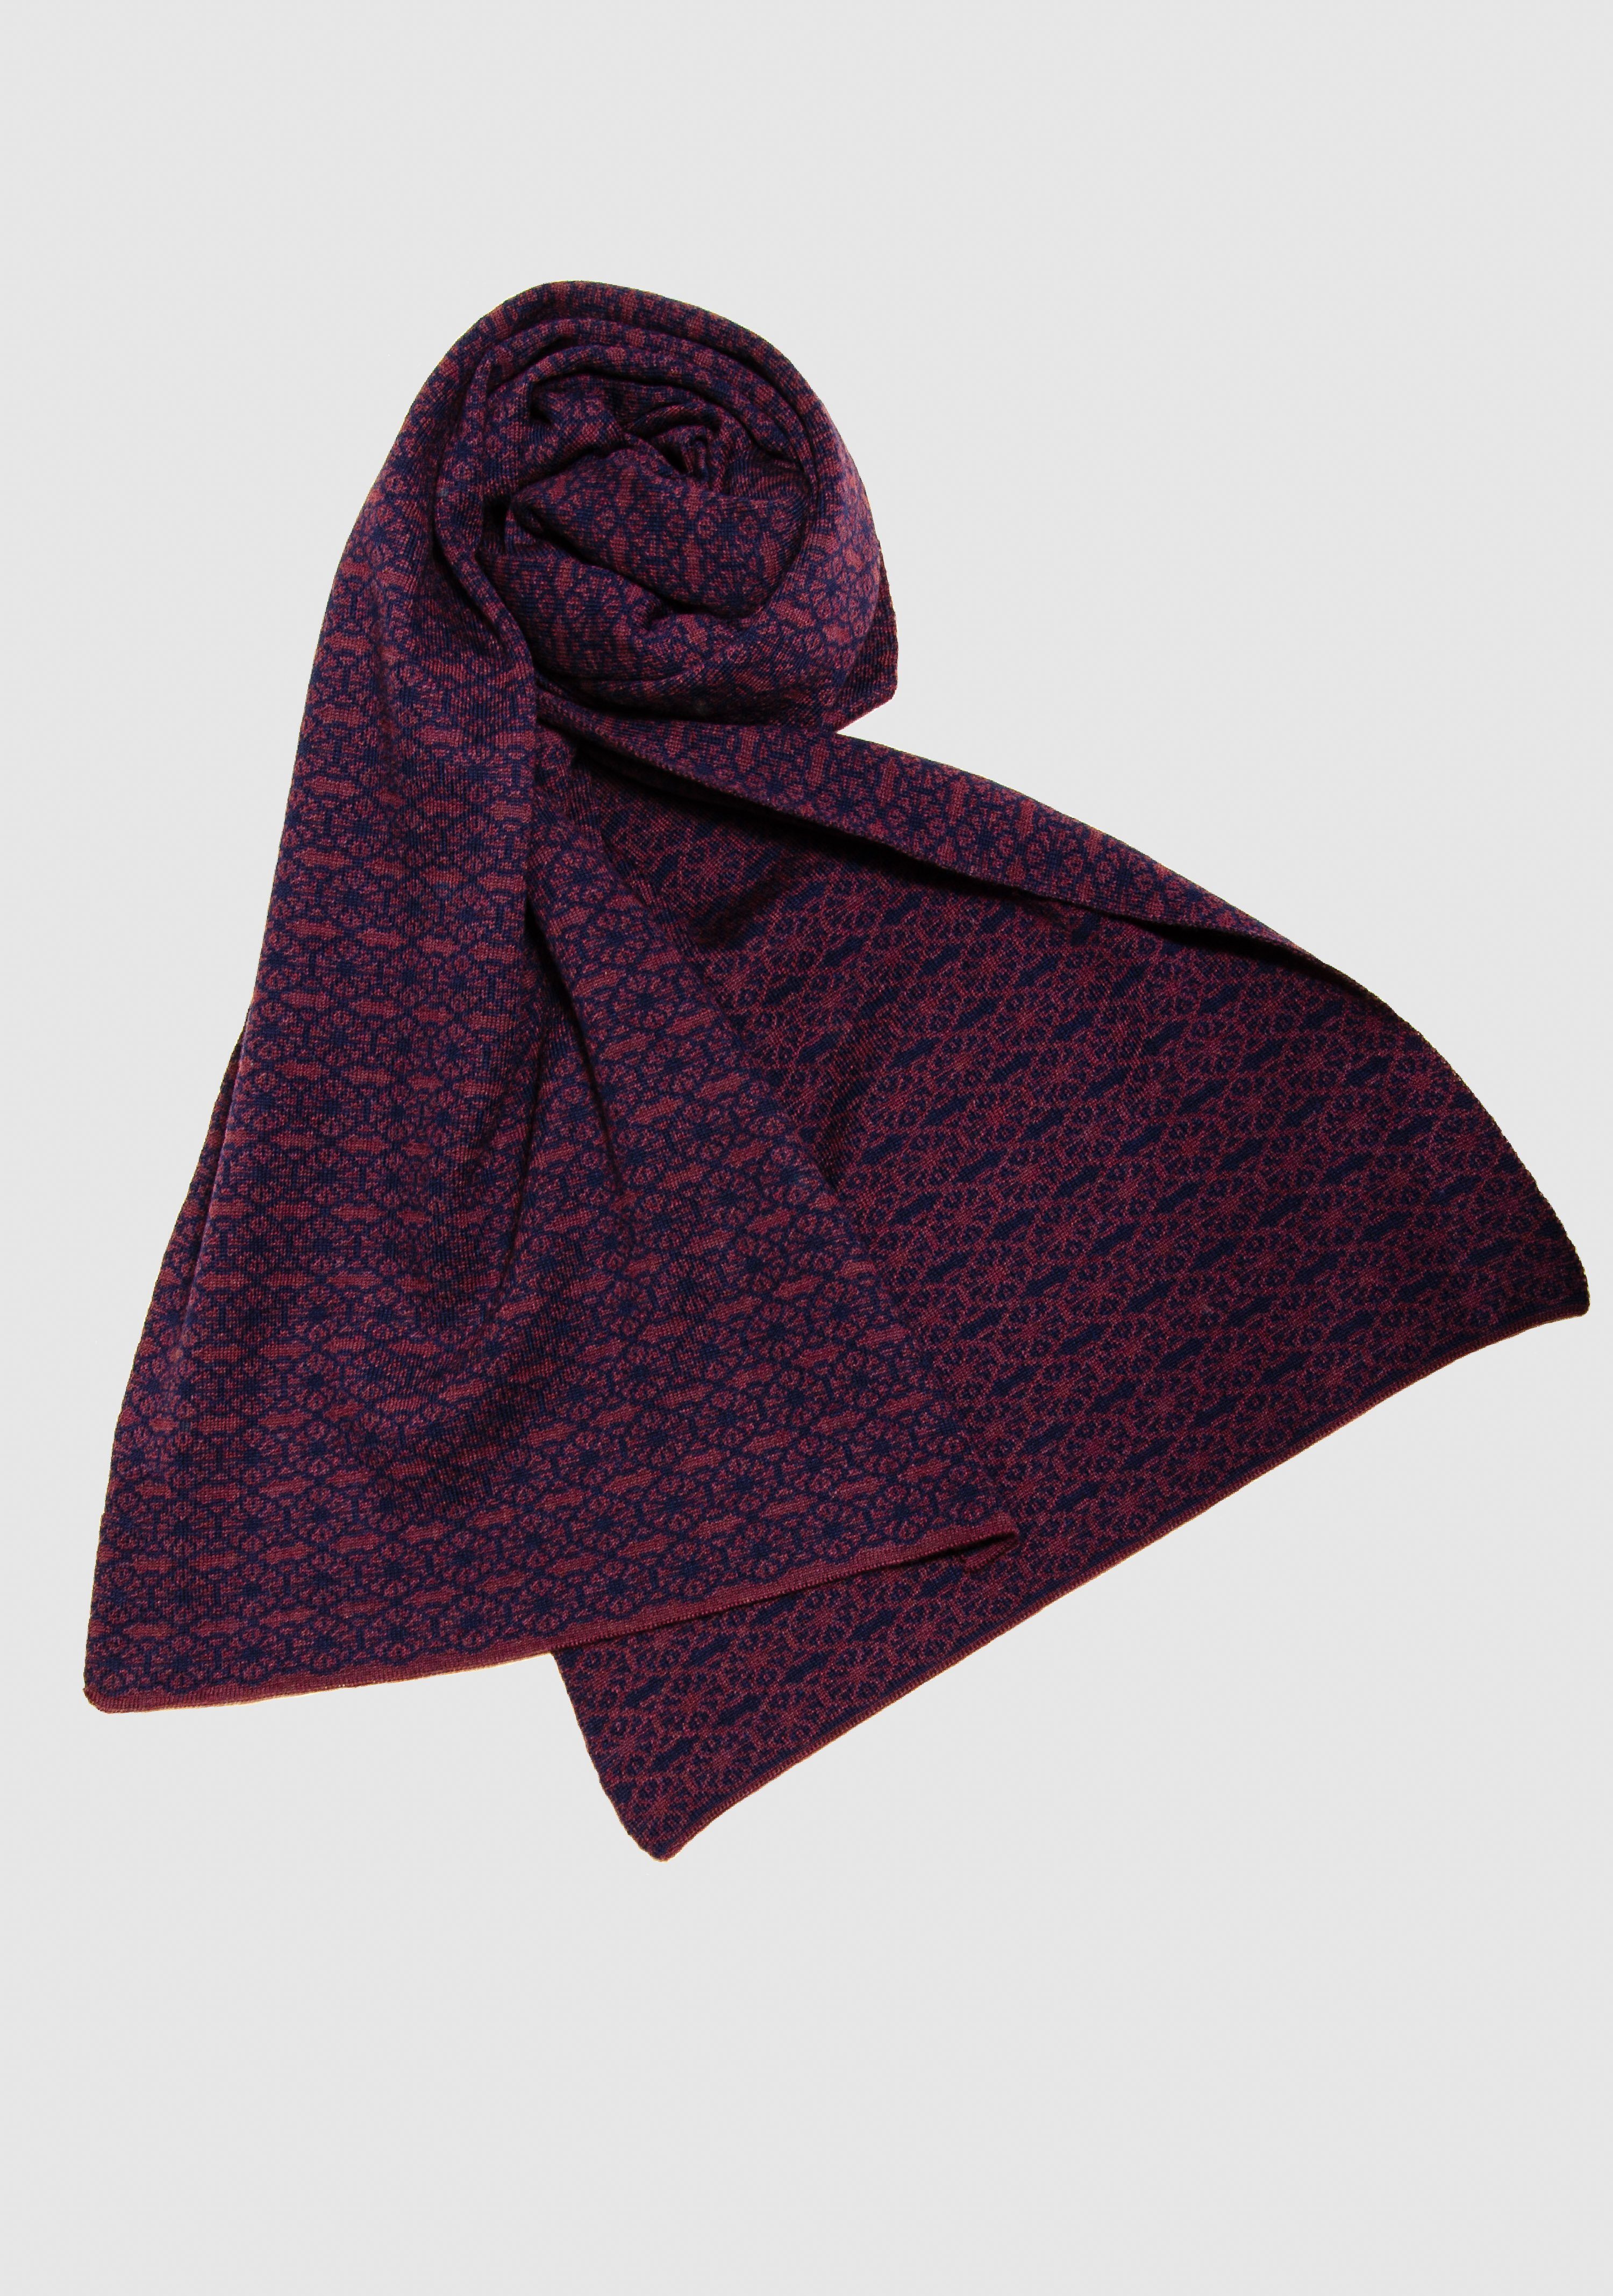 LANARTO slow fashion Wollschal Schal in schönen aus Merino 100% Blüte Farben extrasoft nacht_burgund